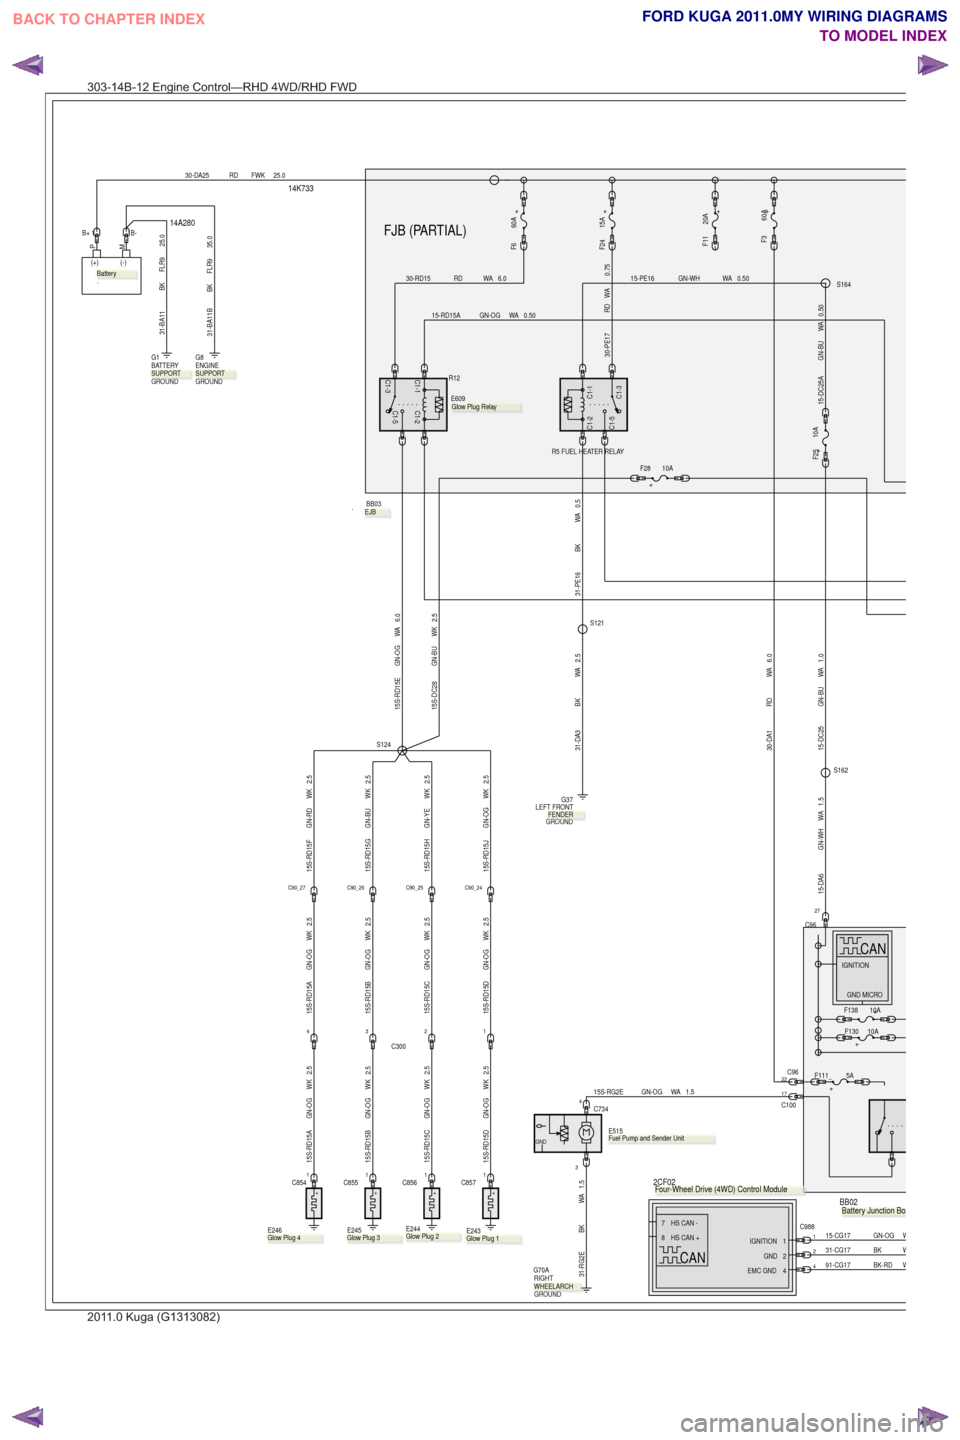 FORD KUGA 2011 1.G Wiring Diagram Repair Manual 14K733
14A280FJB (PARTIAL)
BB03
.
+
F6 60APM
(+) (-)
.
30-DA25 RD FWK 25.0
2.5WK
GN-OG
15S-RD15A2.5WK
GN-OG
15S-RD15B2.5WK
GN-OG
15S-RD15C2.5WK
GN-OG
15S-RD15D
+
.
E244
+
E246
.
1C8541C8561C857C8551
+